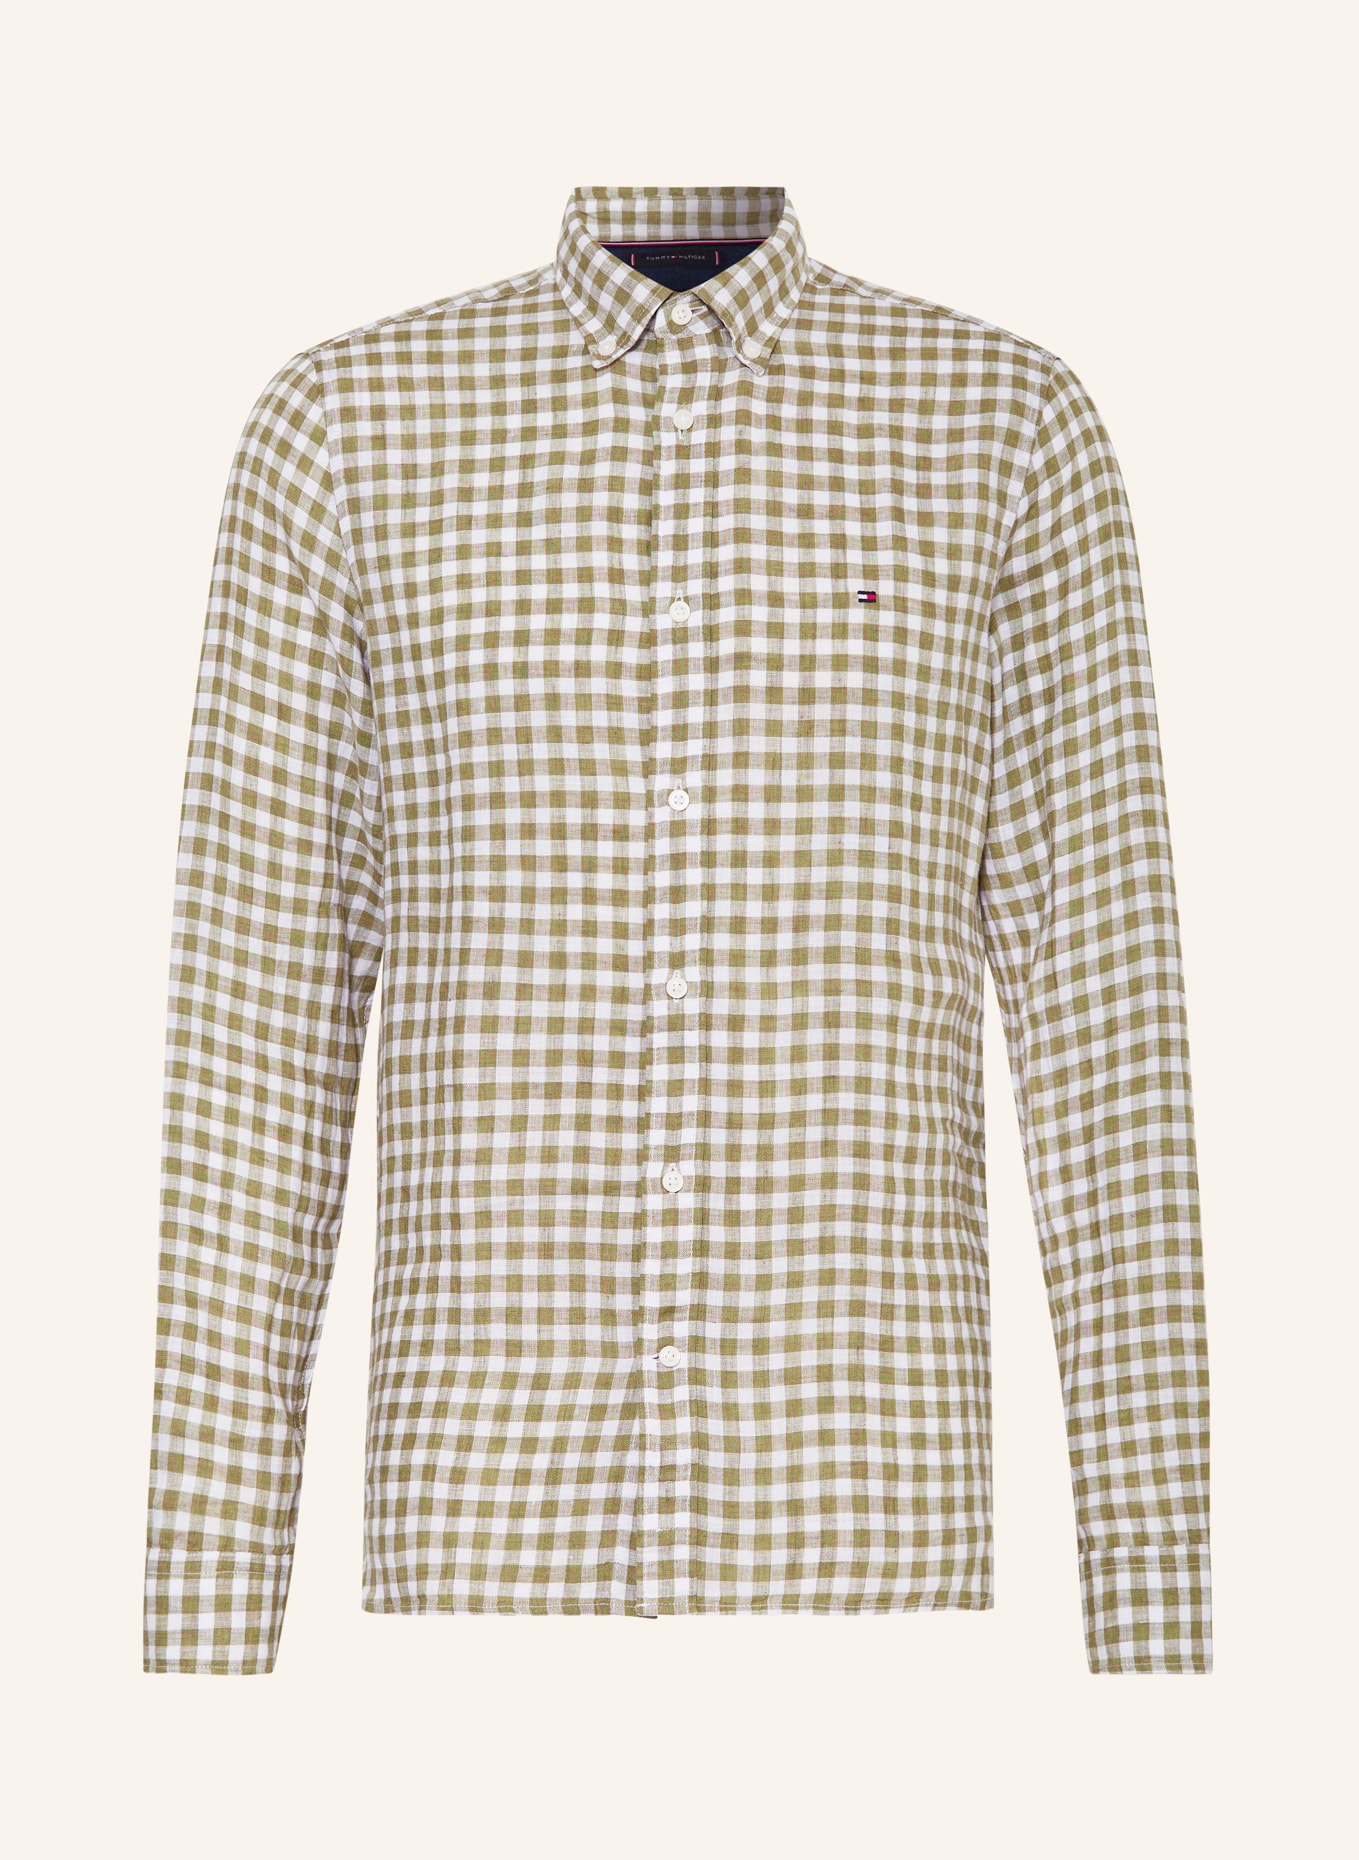 TOMMY HILFIGER Leinenhemd Slim Fit, Farbe: OLIV/ WEISS (Bild 1)